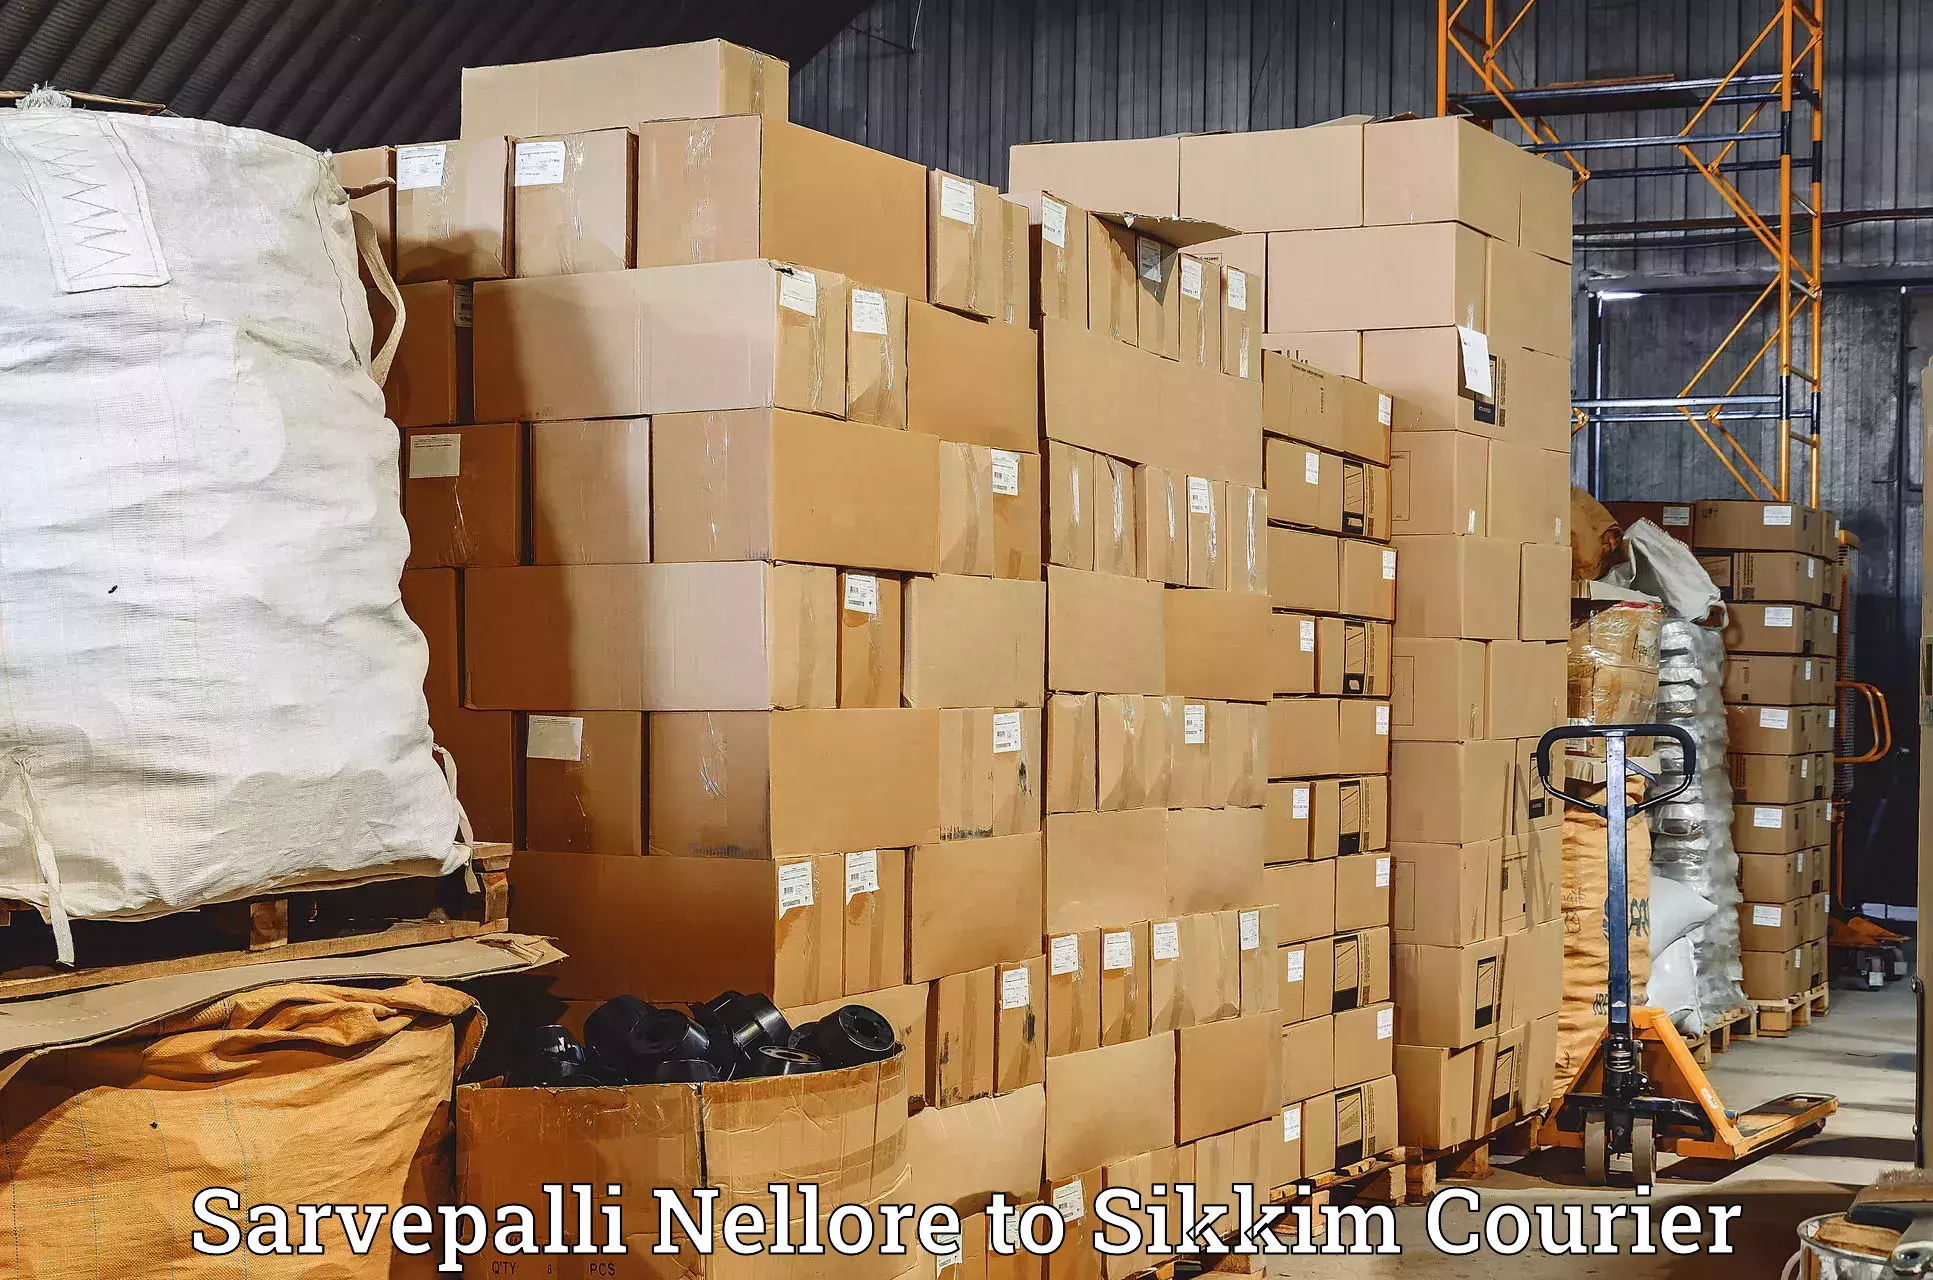 Premium delivery services Sarvepalli Nellore to NIT Sikkim